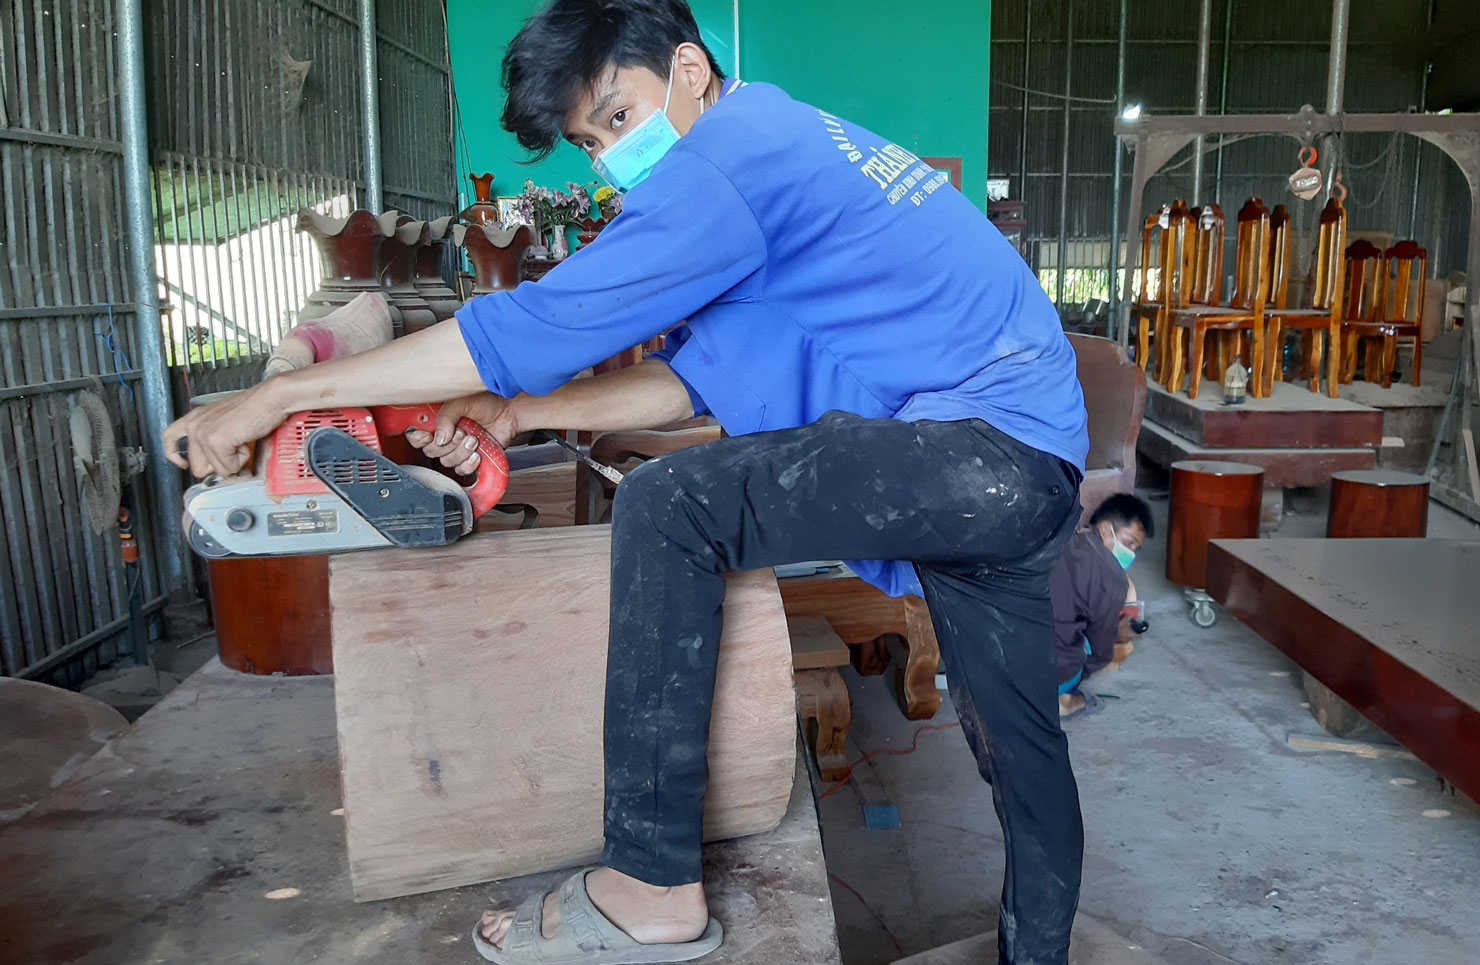 Doanh nghiệp nhỏ và vừa rất cần sự hỗ trợ về pháp lý (Trong ảnh: Công nhân một cơ sở chế biến gỗ ở xã Thái Bình Trung, huyện Vĩnh Hưng)